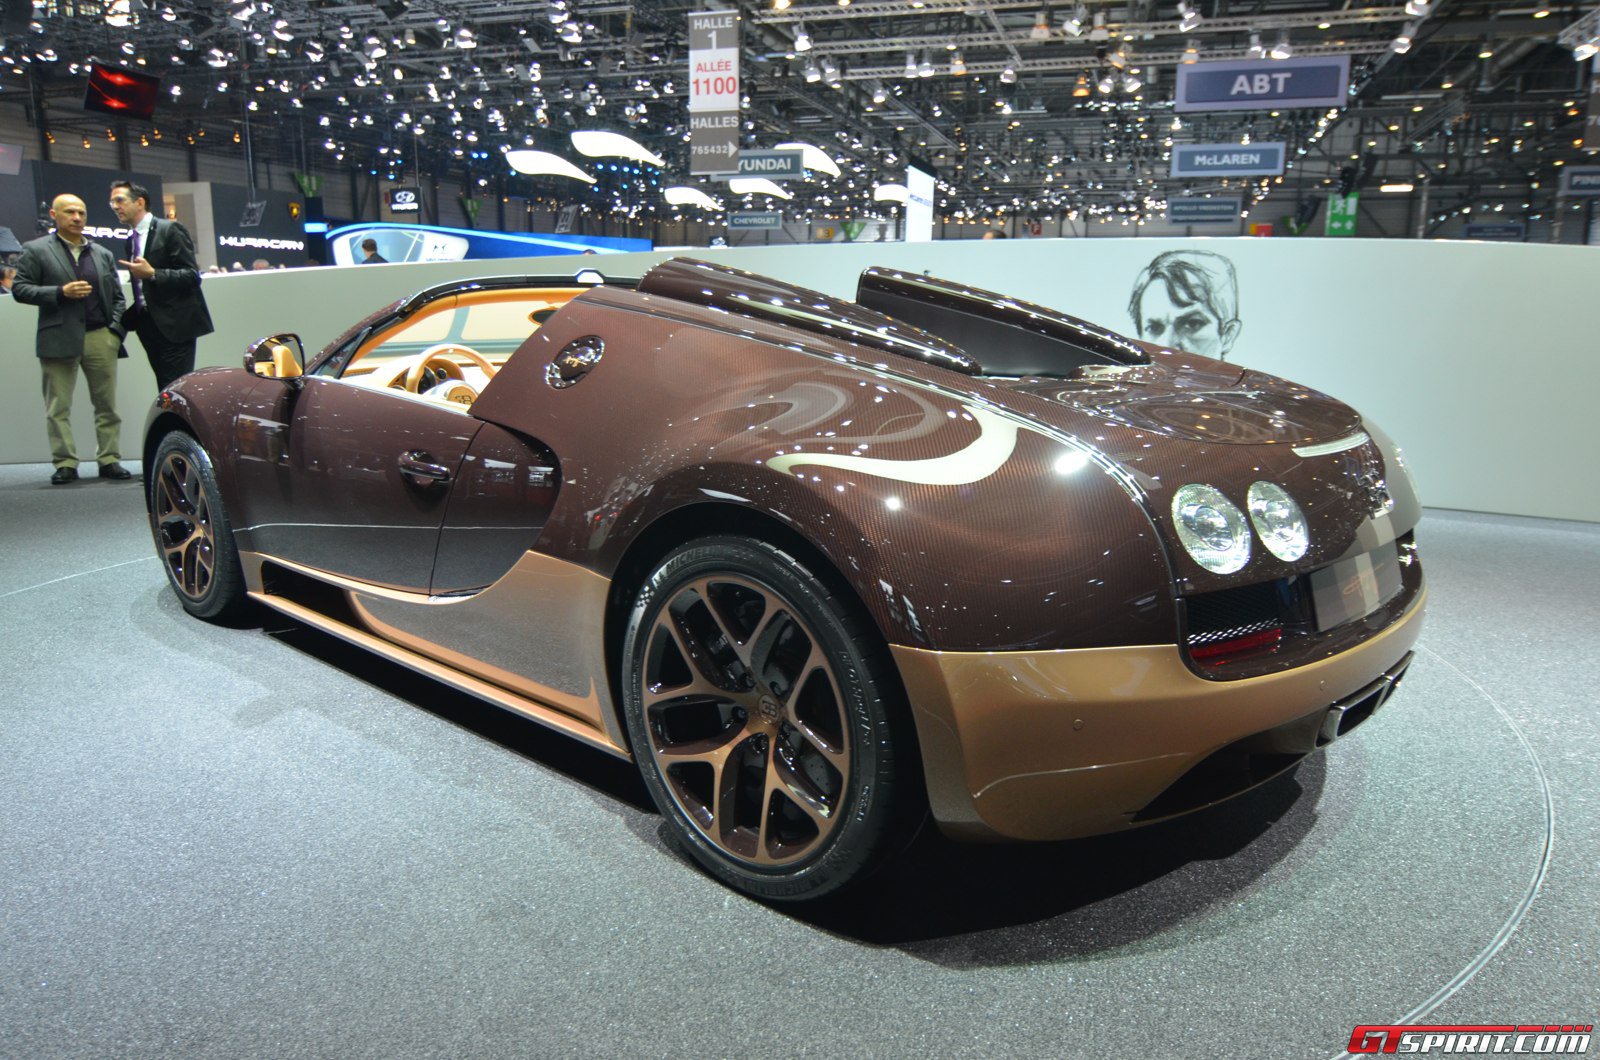 Tin tức - Hé lộ siêu xe “huyền thoại” sắp ra mắt của Bugatti (Hình 2).